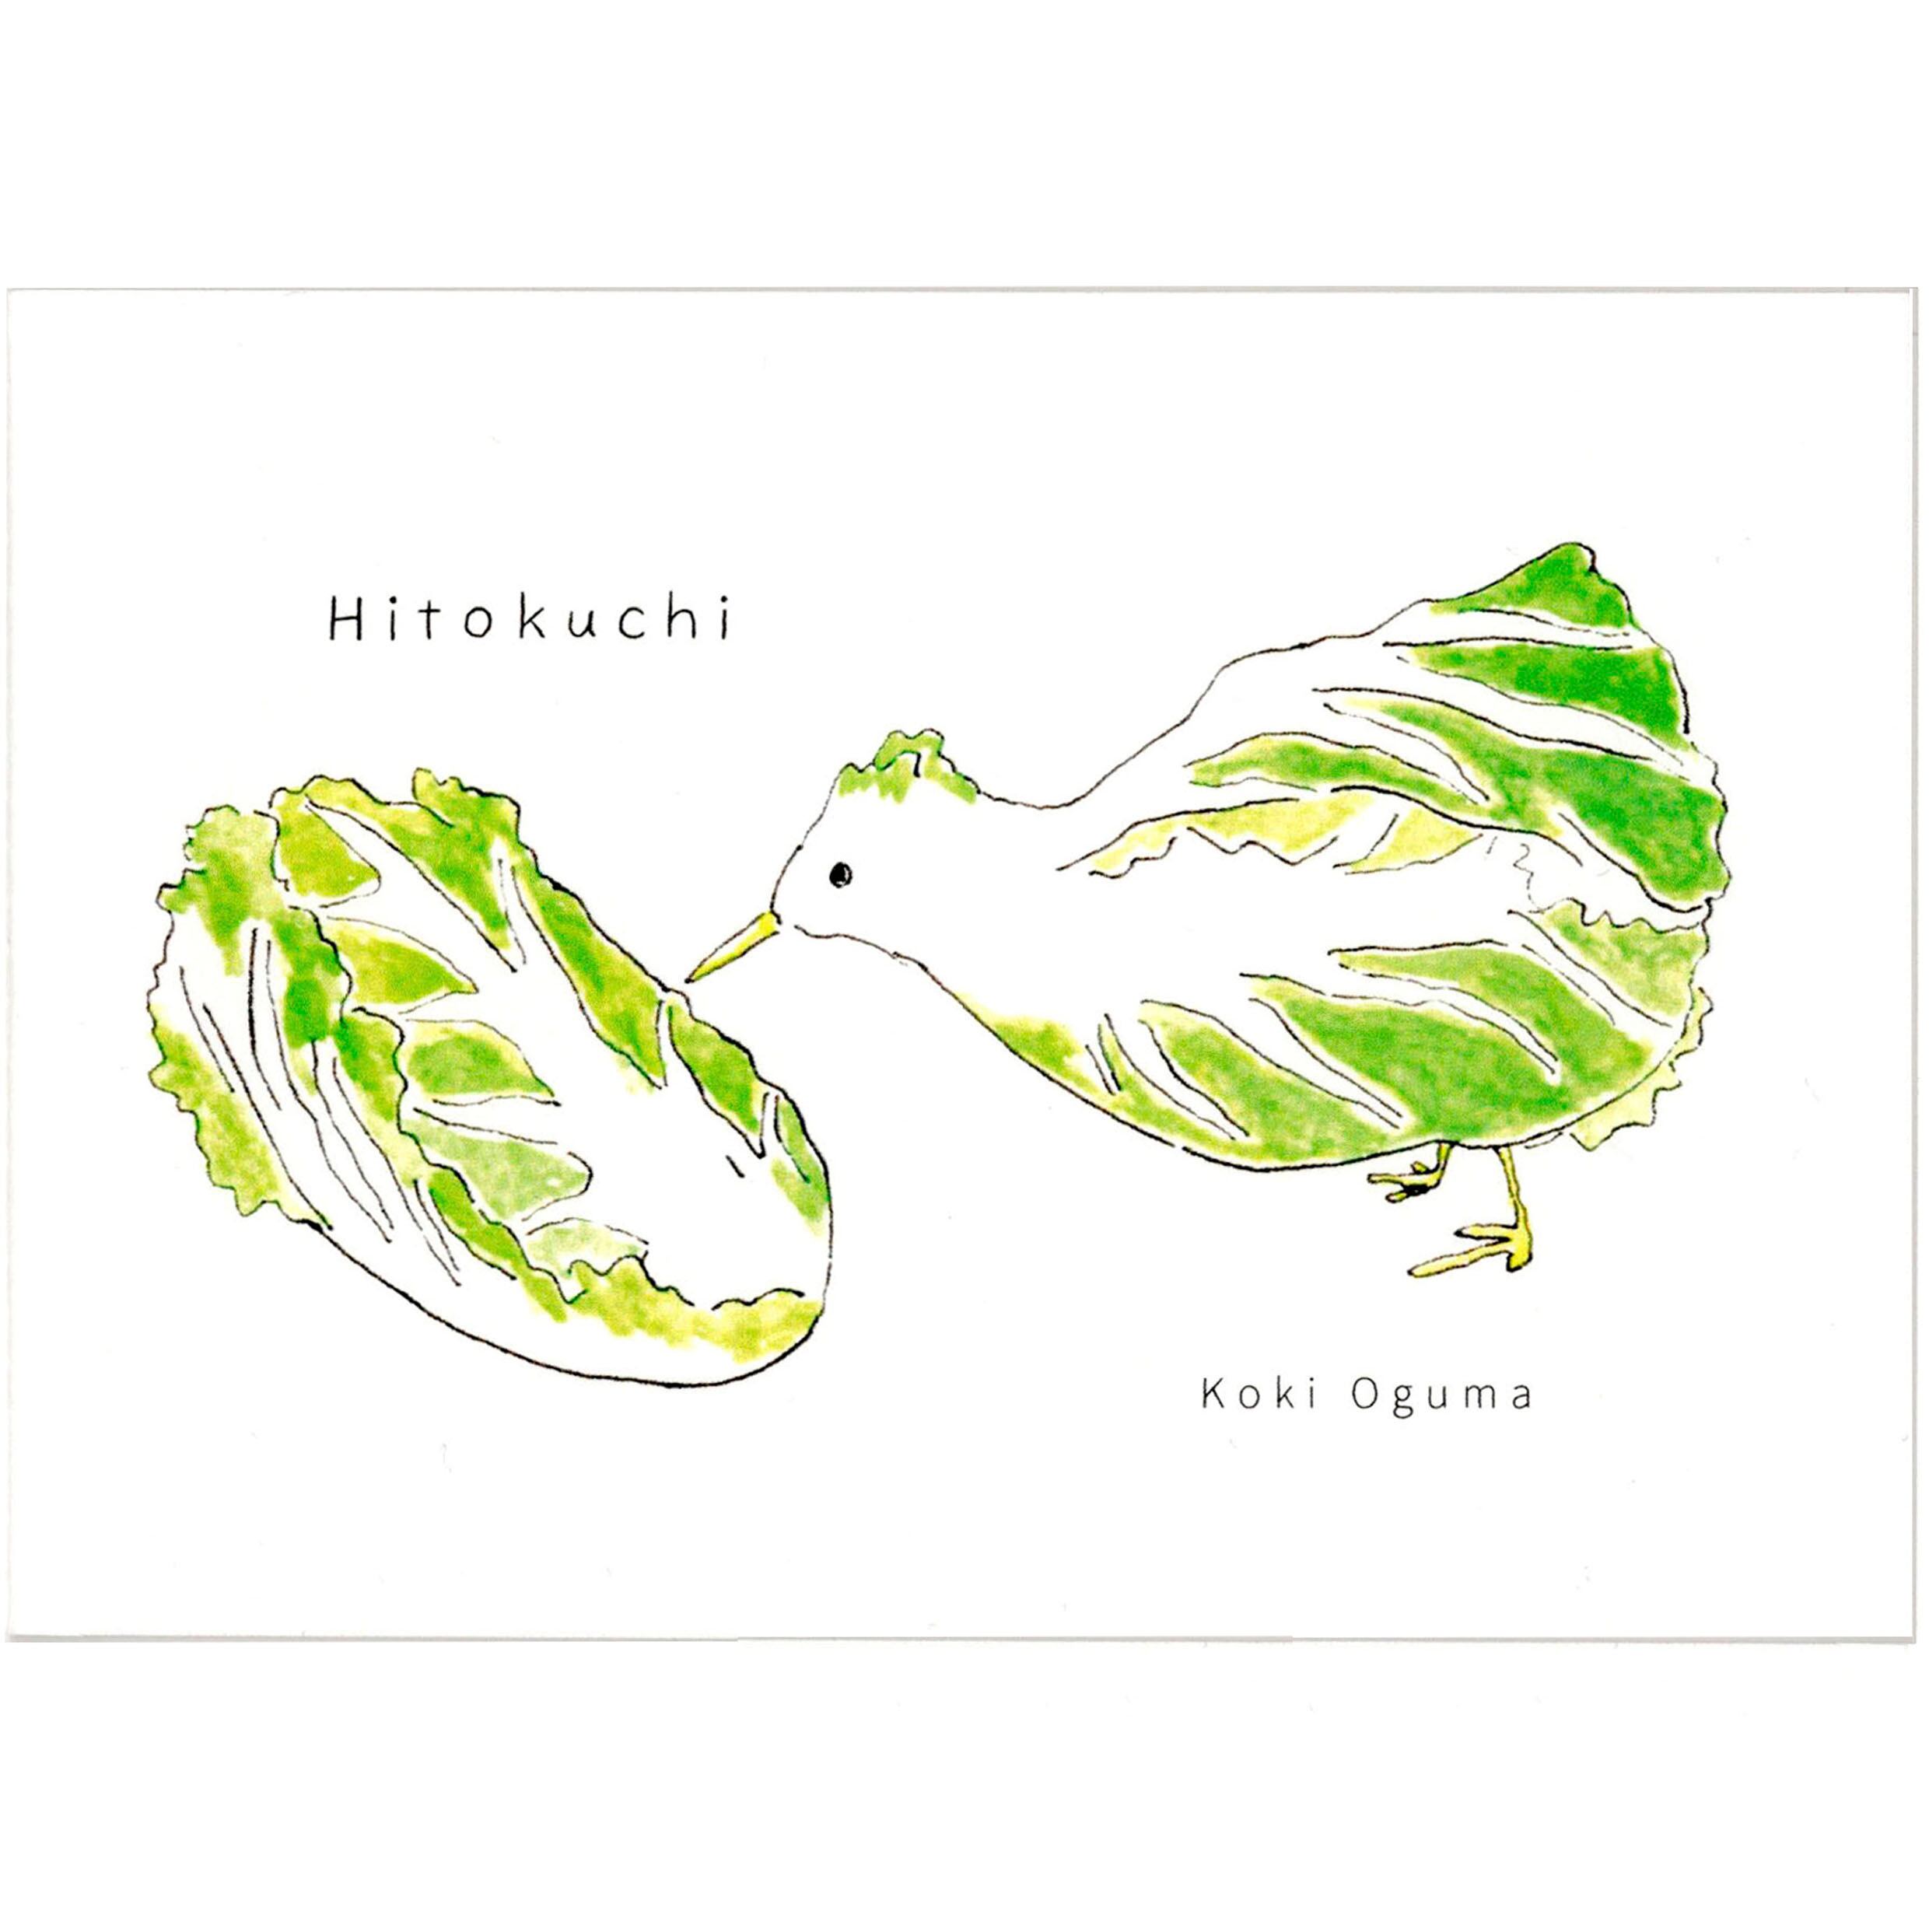 Hitokuchi